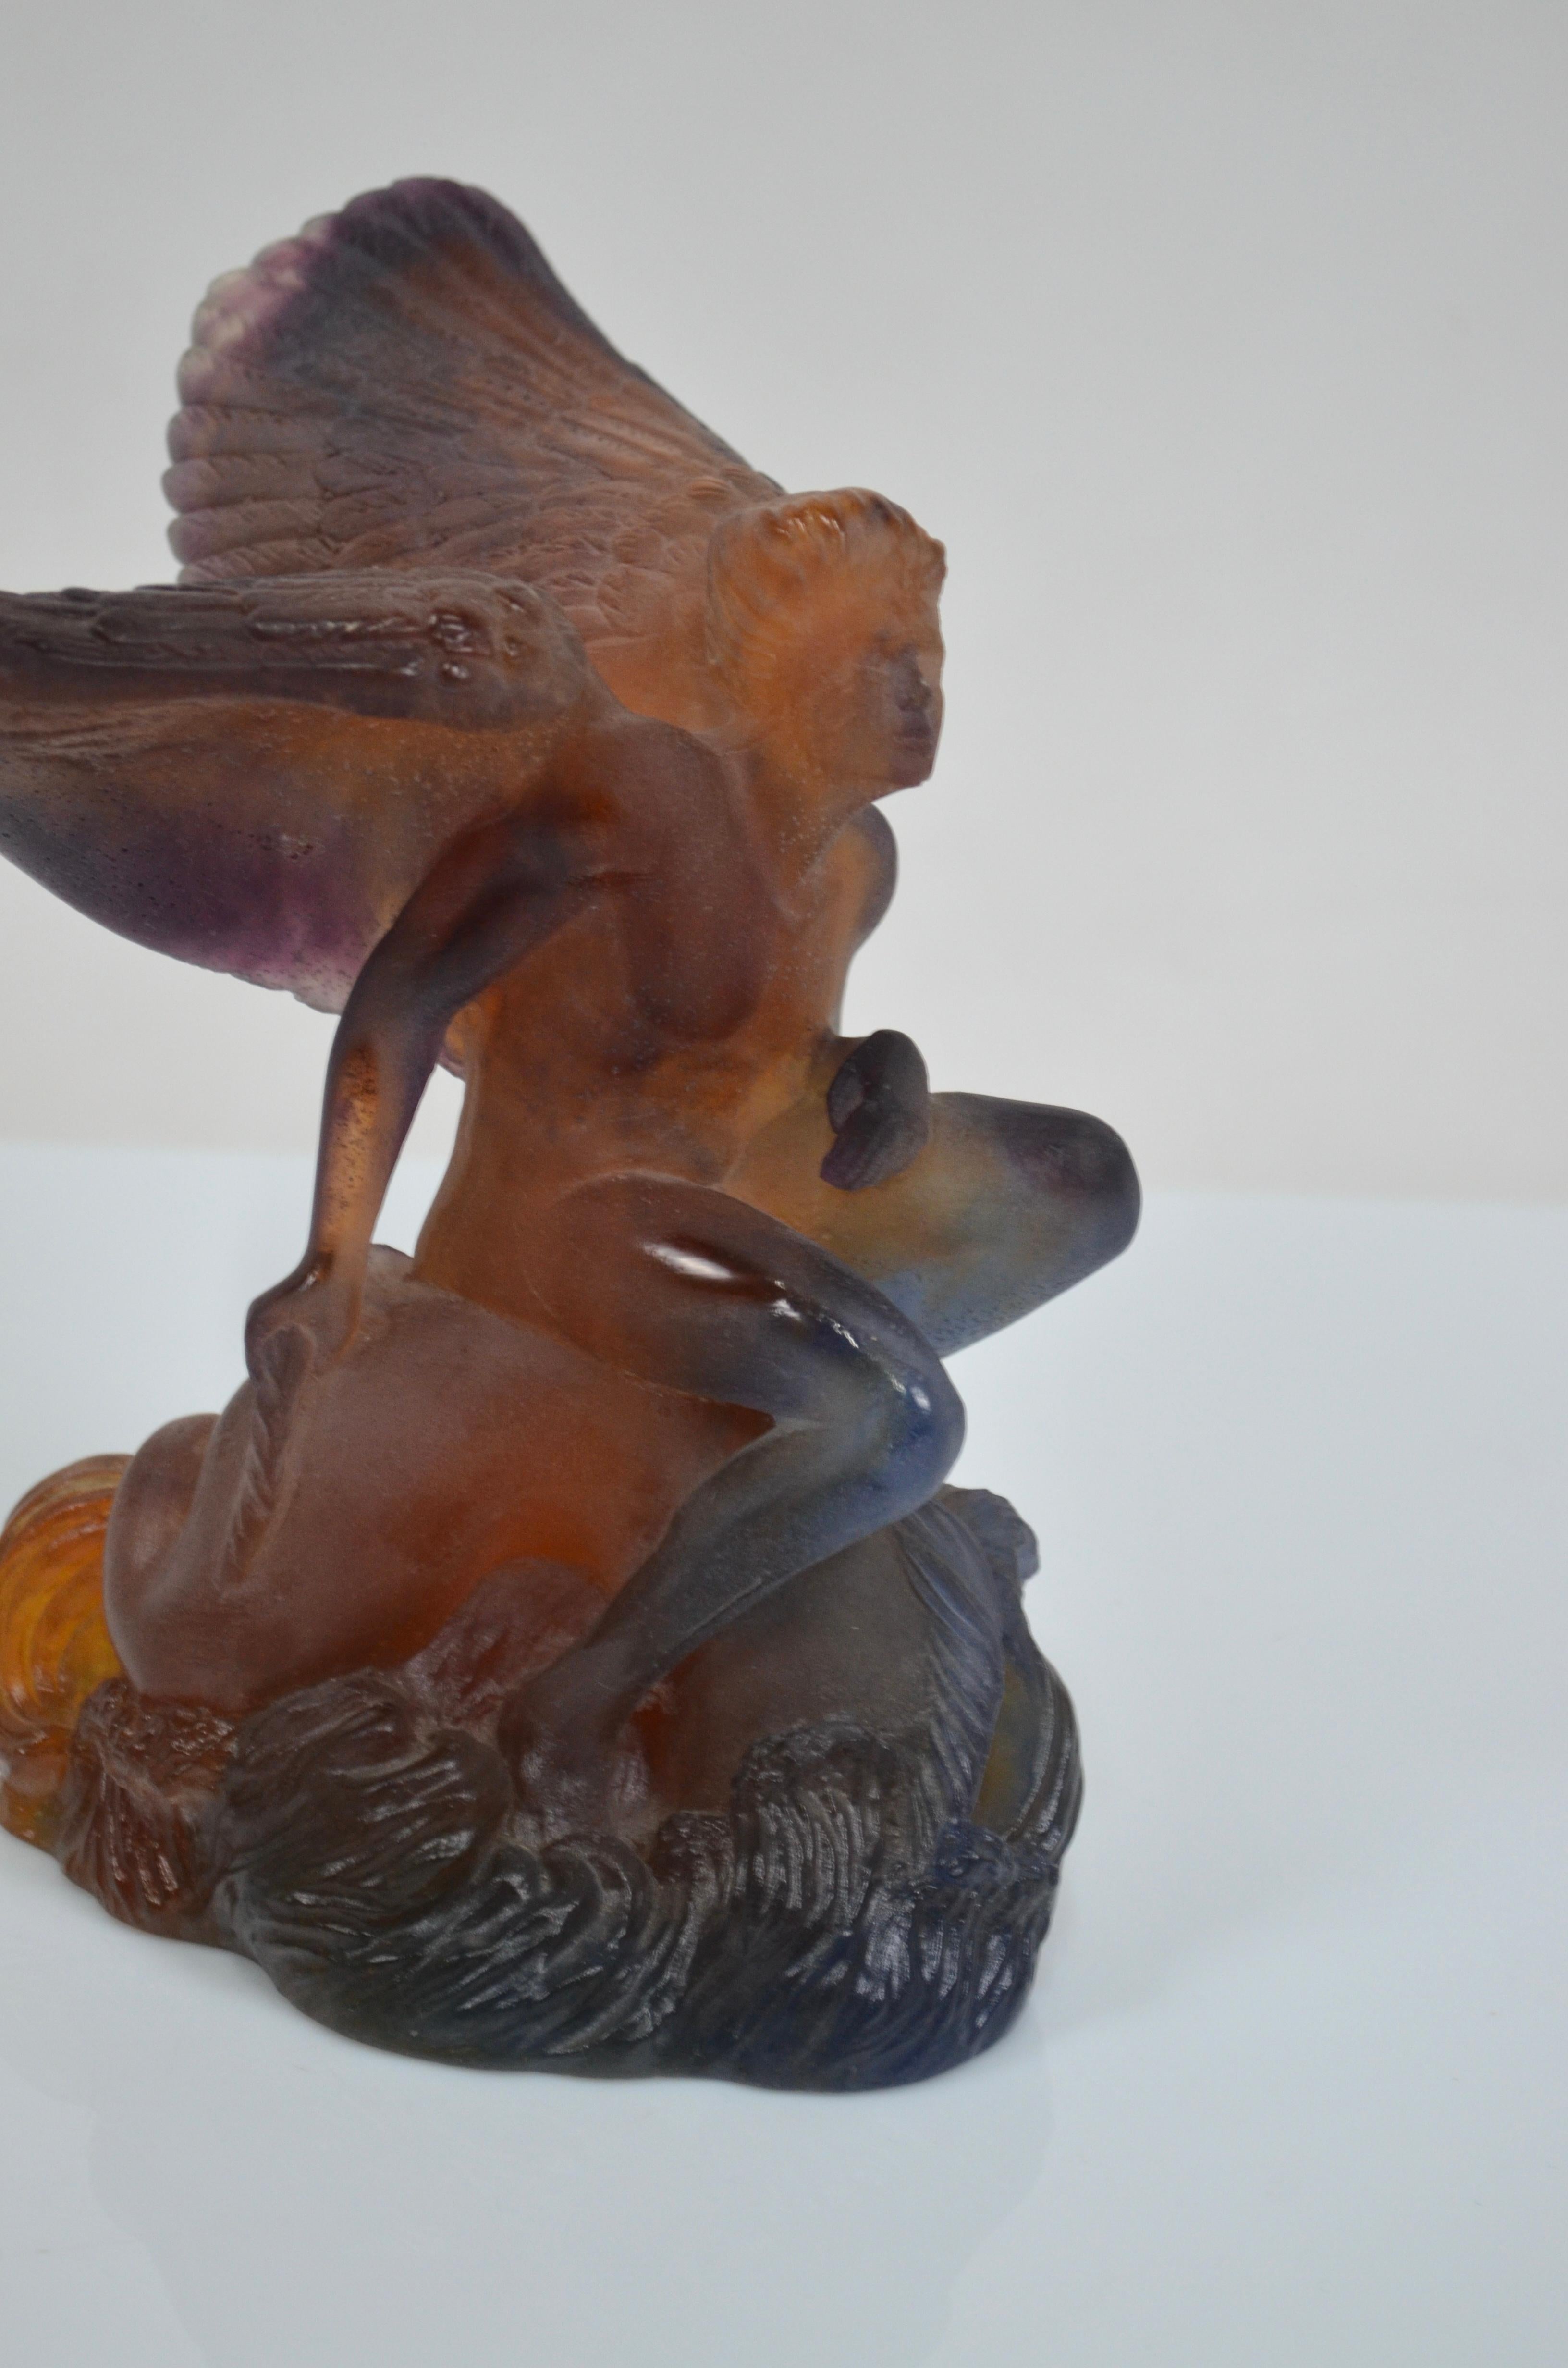 Prächtige Schale von Daum France, bestehend aus einer Skulptur aus Kristallpaste, die Ikarus darstellt, der mit seinen Flügeln eine prächtige und große Kristalltasse trägt
Bernsteinfarben, mit violetten oder granatfarbenen Reflexen.
Das Werk ist mit